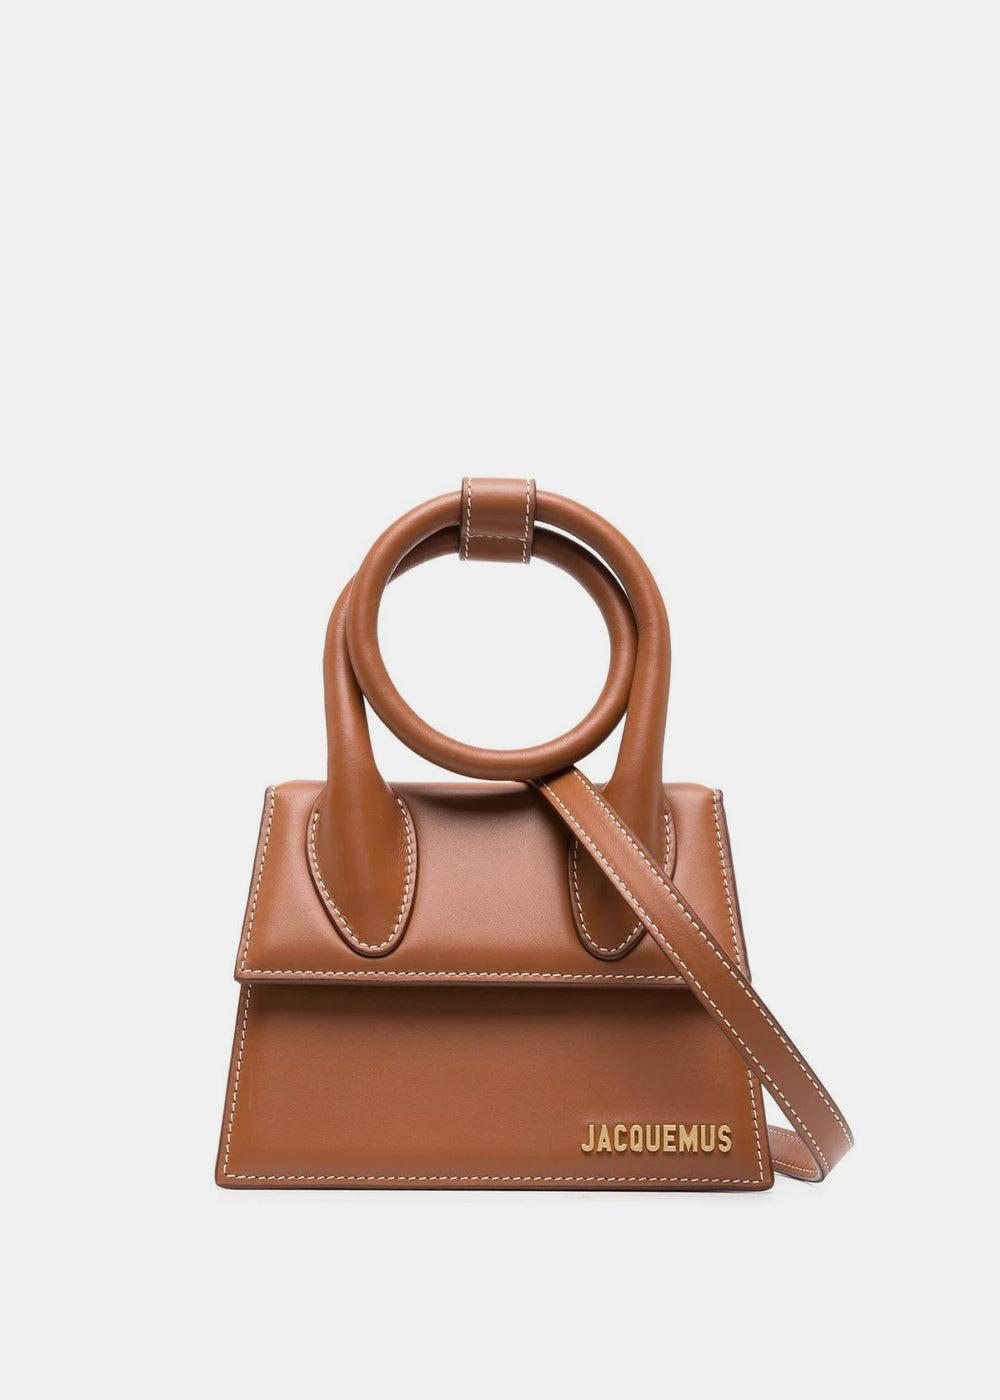 Jacquemus Medium Leather Le Chiquito Top-Handle Bag